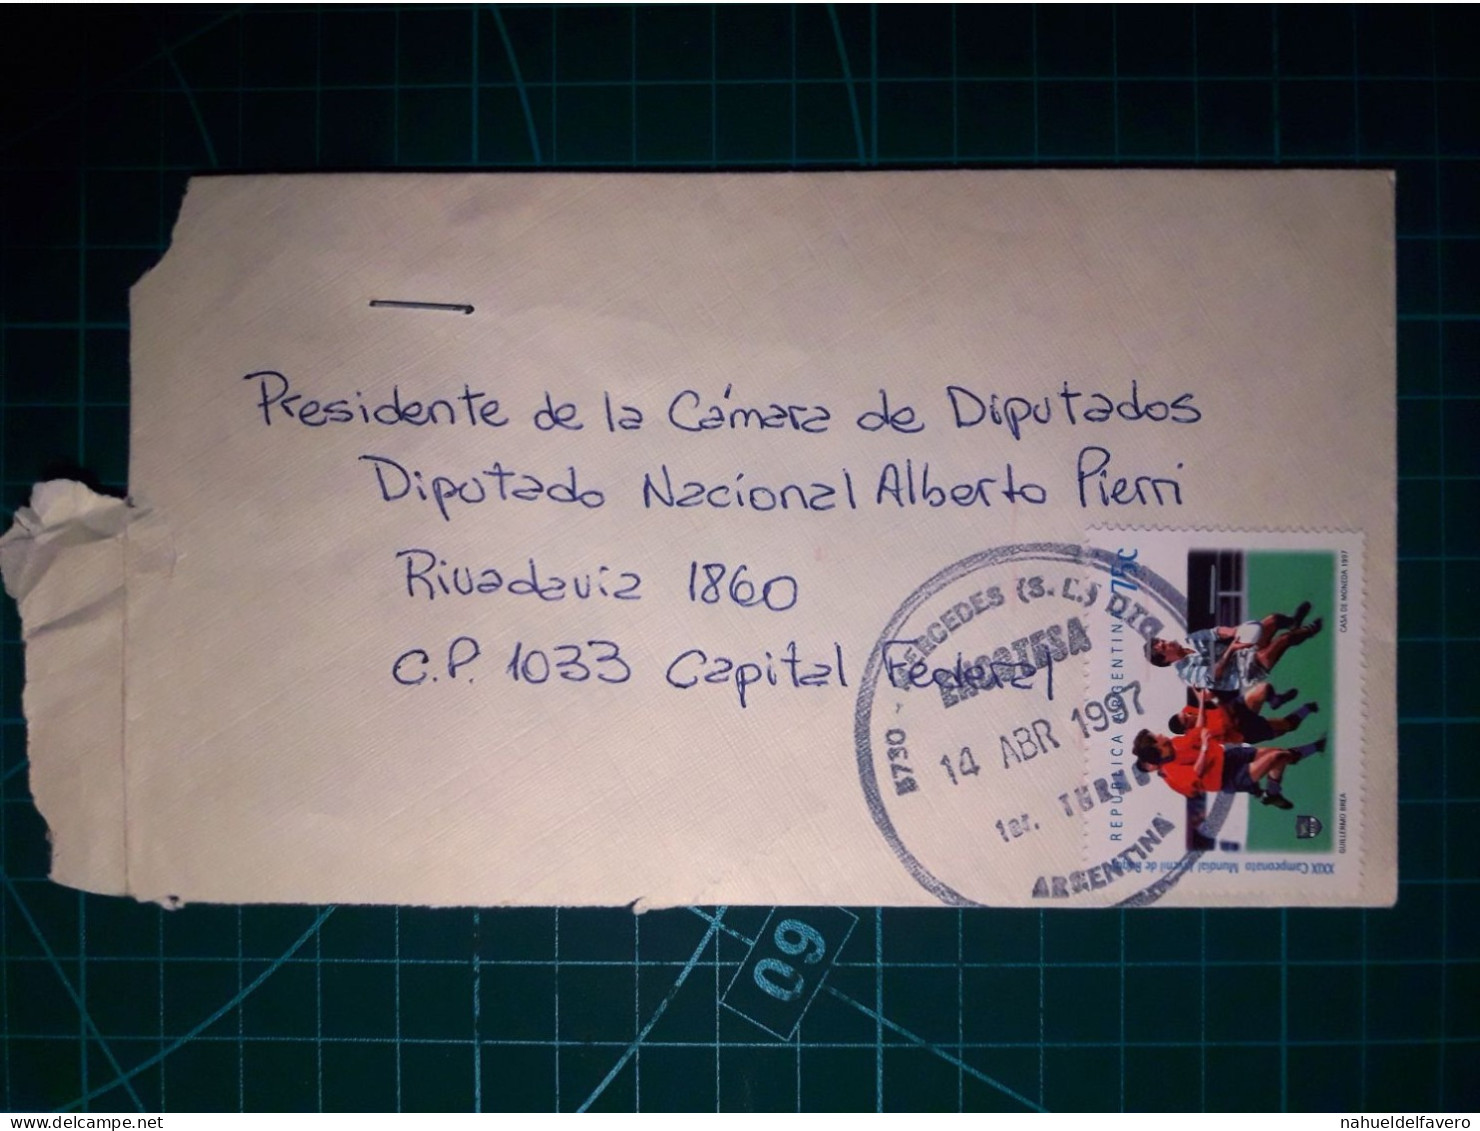 ARGENTINE, Enveloppe Circulée De La Ville De Mercedes à La Capitale Fédérale. Année 1997. - Oblitérés